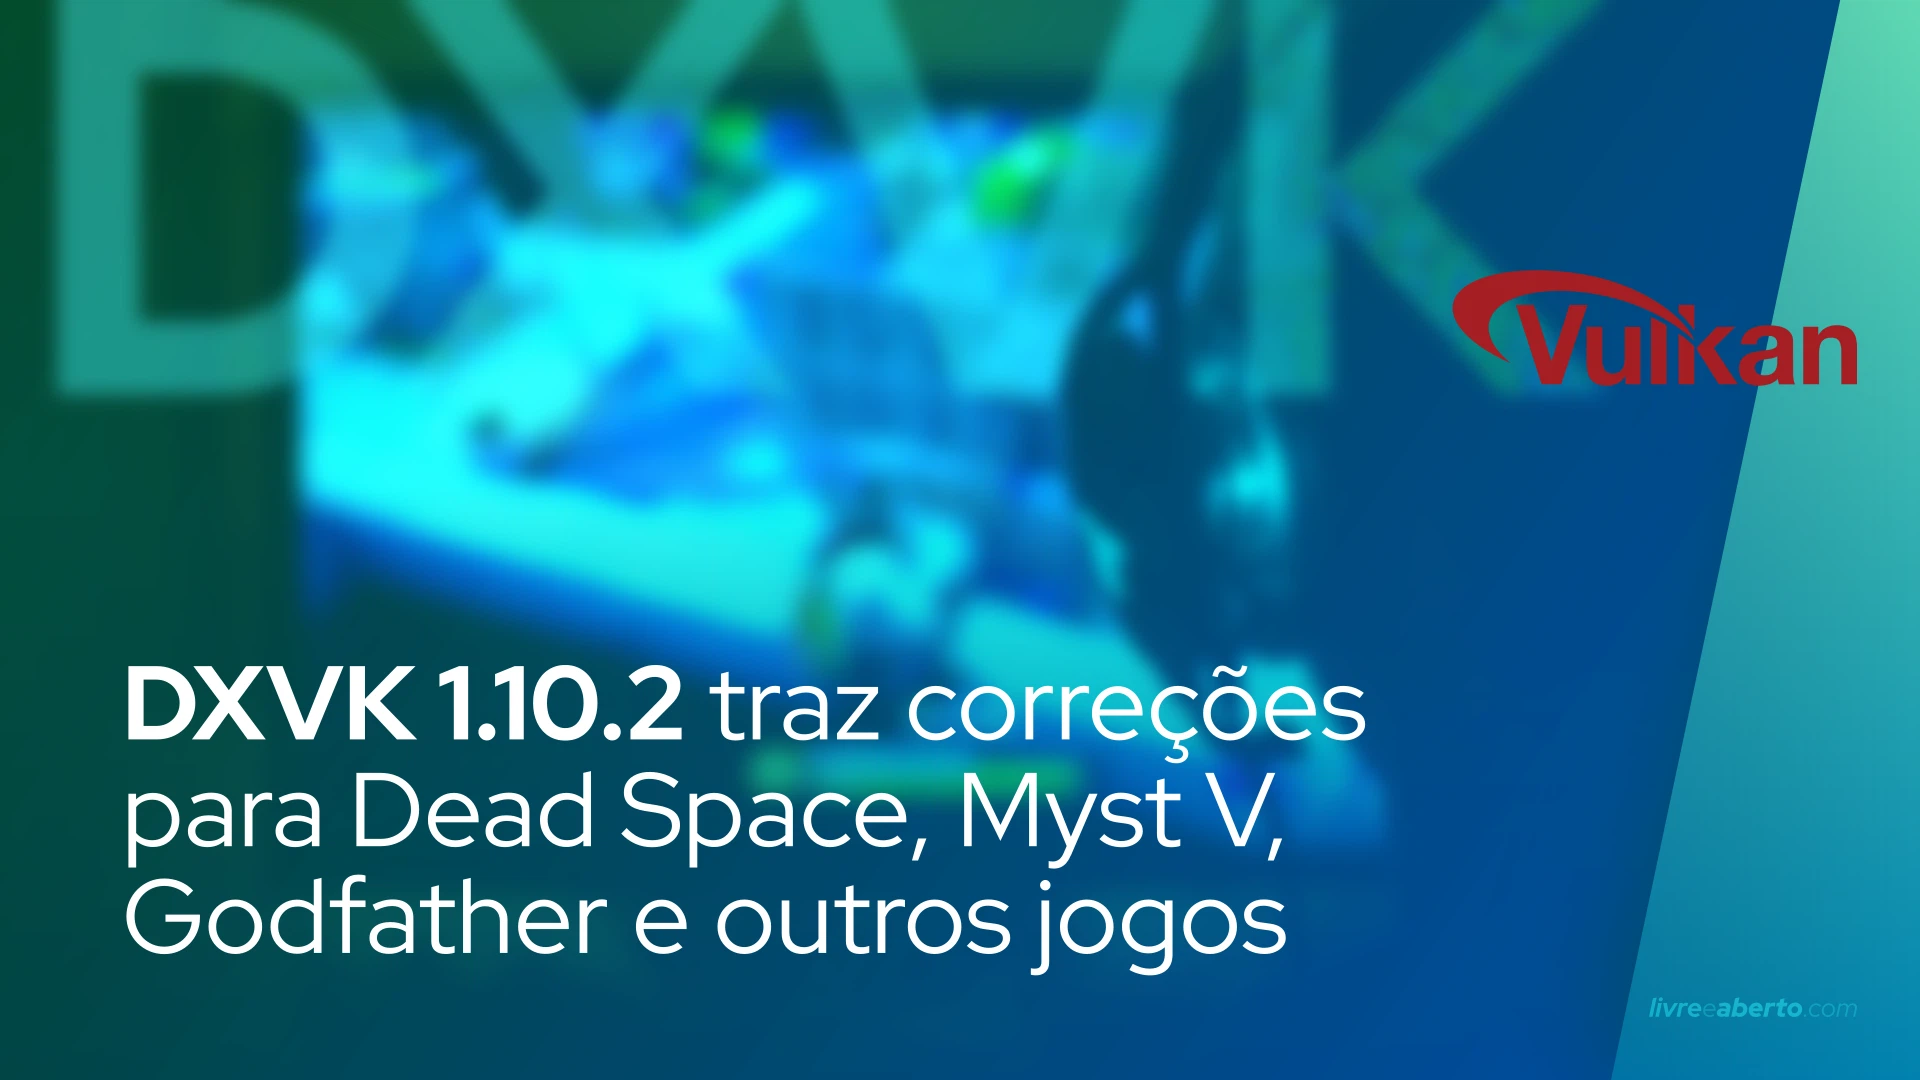 DXVK 1.10.2 traz correções para Dead Space, Myst V, Godfather e muitos outros jogos